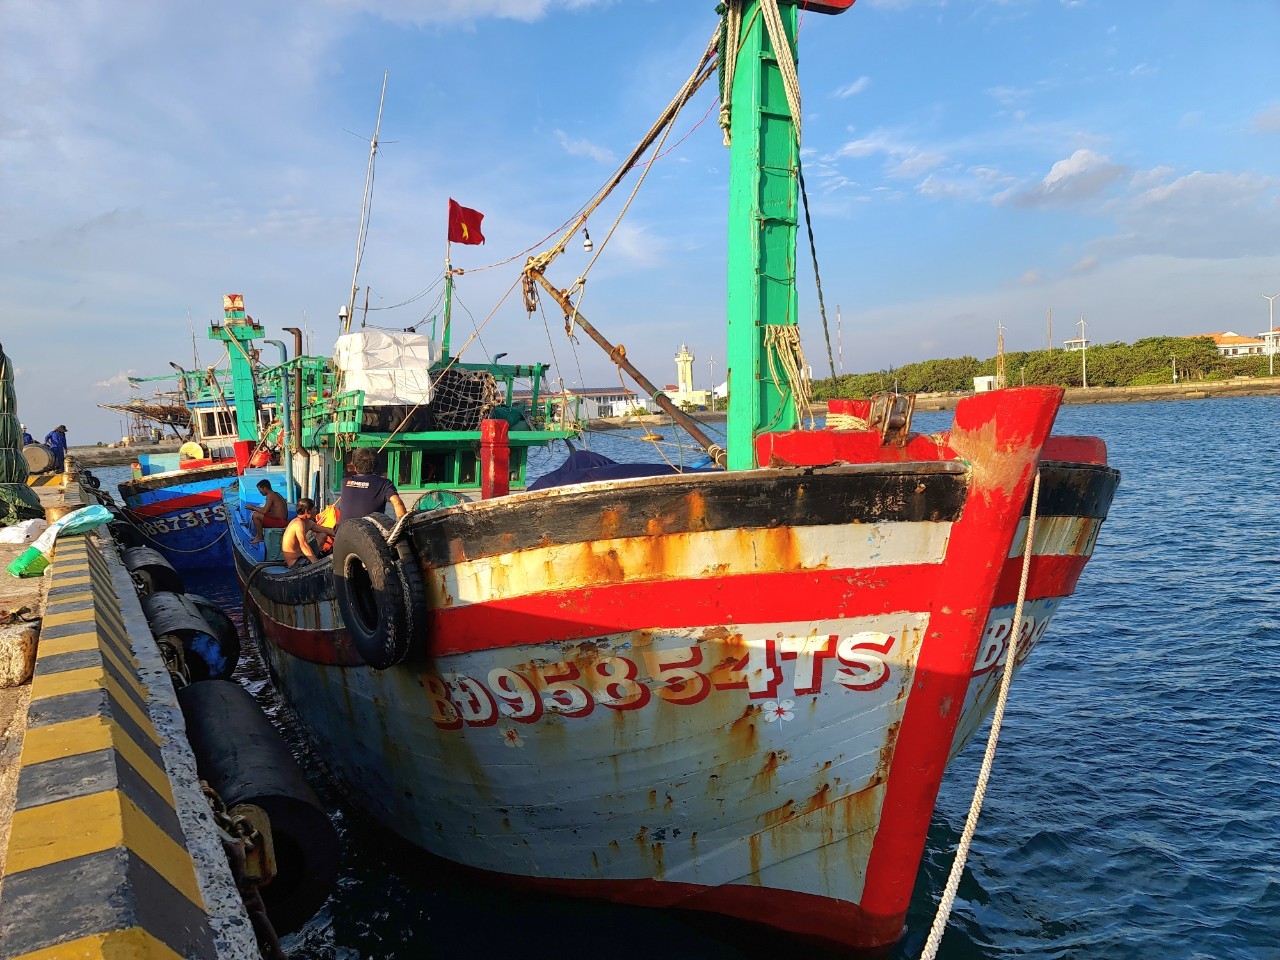 Trung tâm Dịch vụ Hậu cần – Kỹ thuật đảo Trường Sa sửa chữa cho tàu cá Bình Định